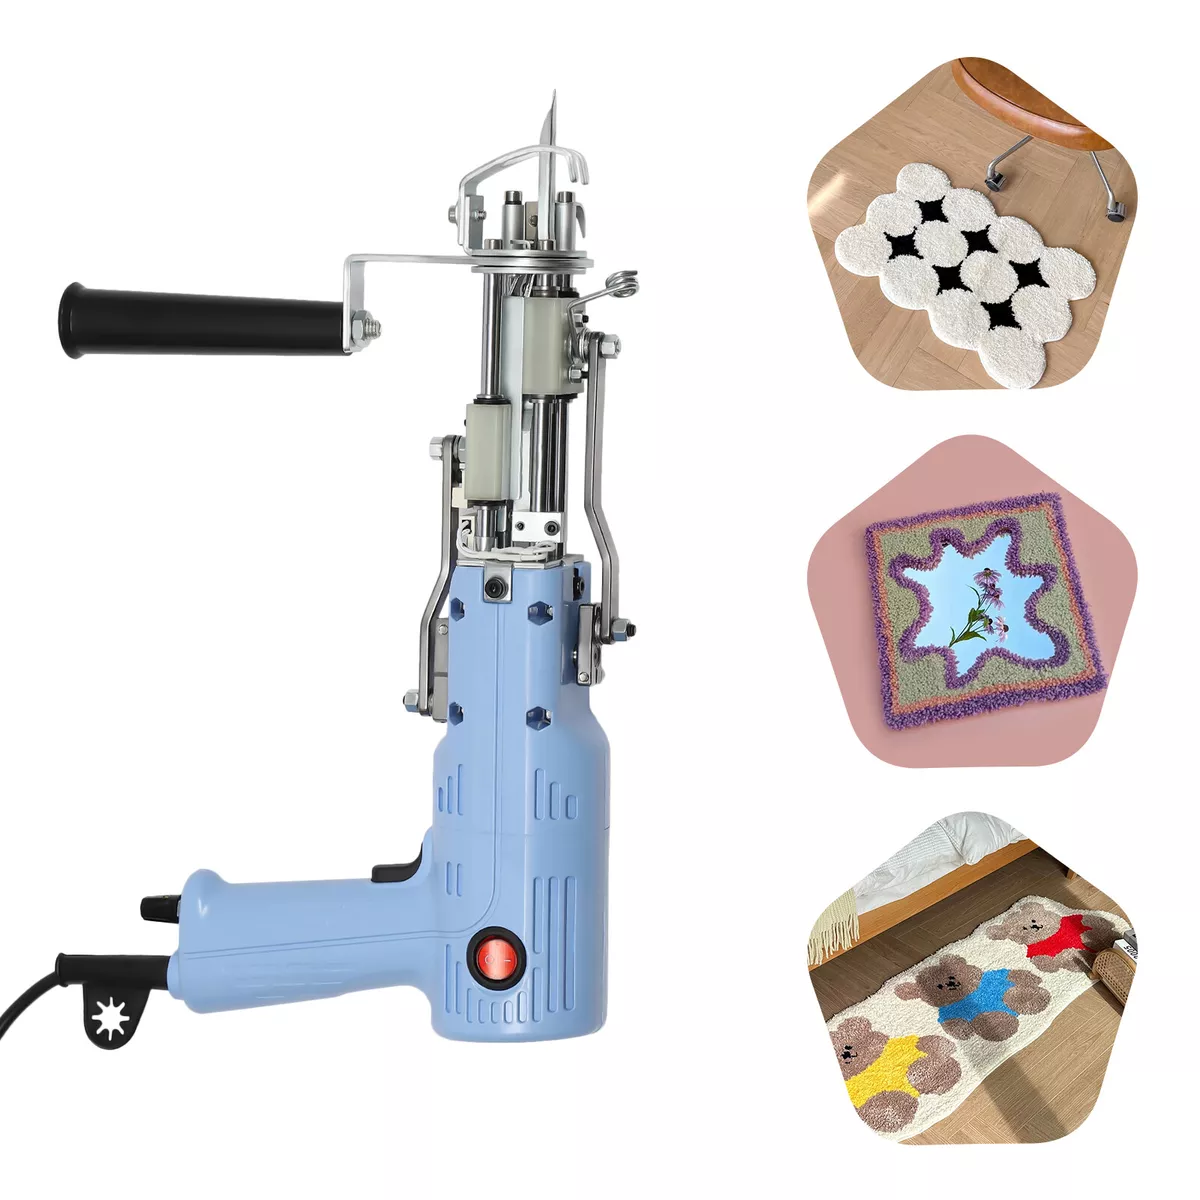 Tufting Gun 2 in 1, Loop Pile Cut Pile Rug Gun Machine Starter Kit, New  Upgrade Electric Carpet Tufting Kit for Rug Making 